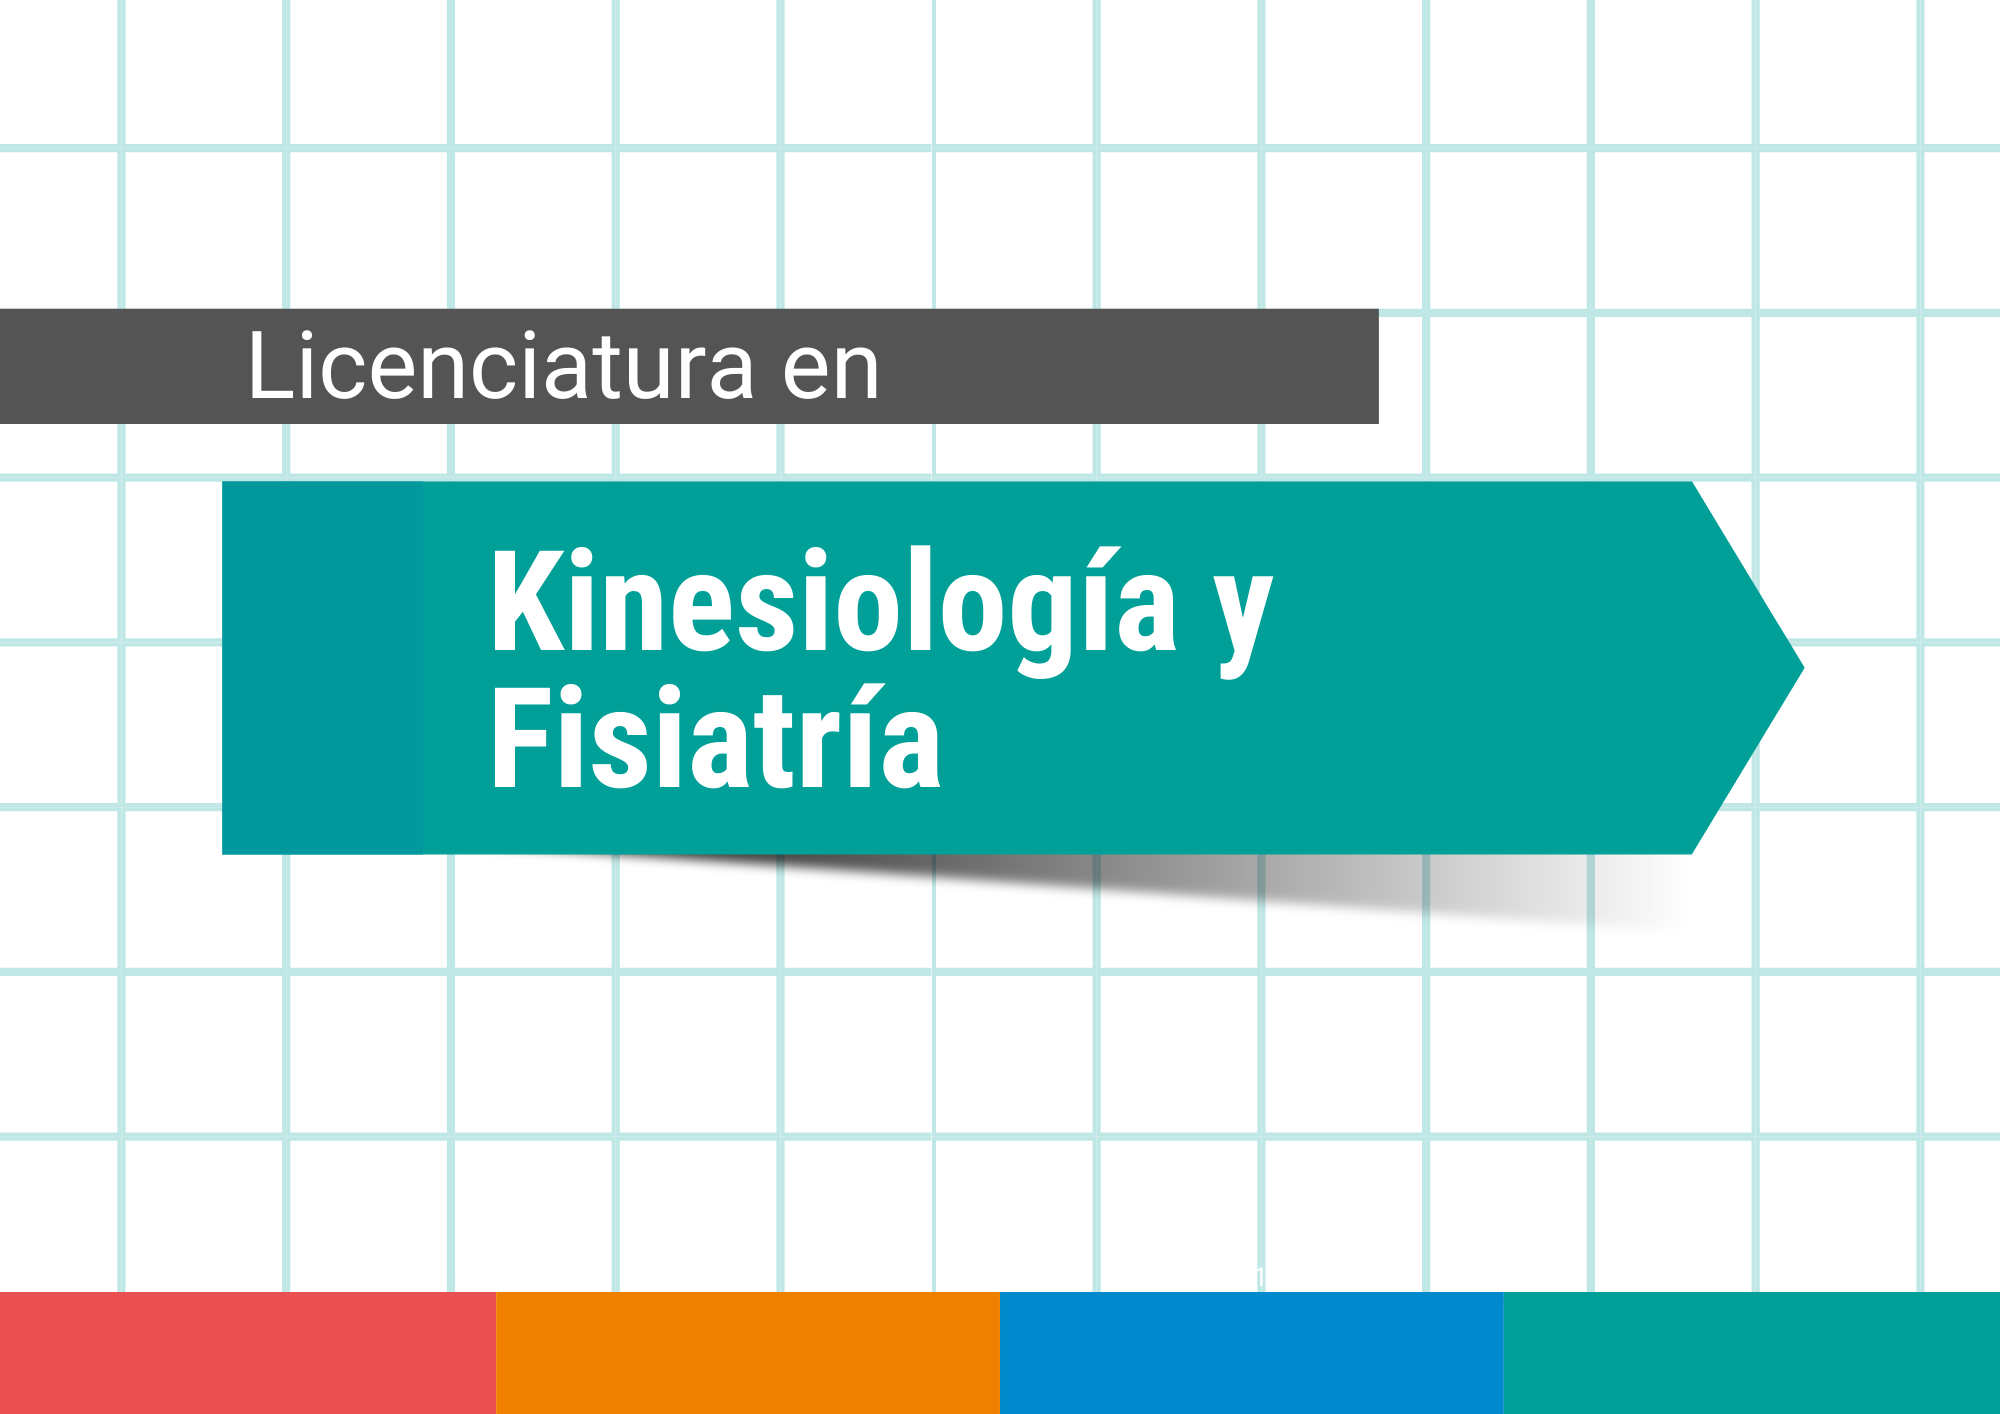 Lic en Kinesiologia y Fisiatria